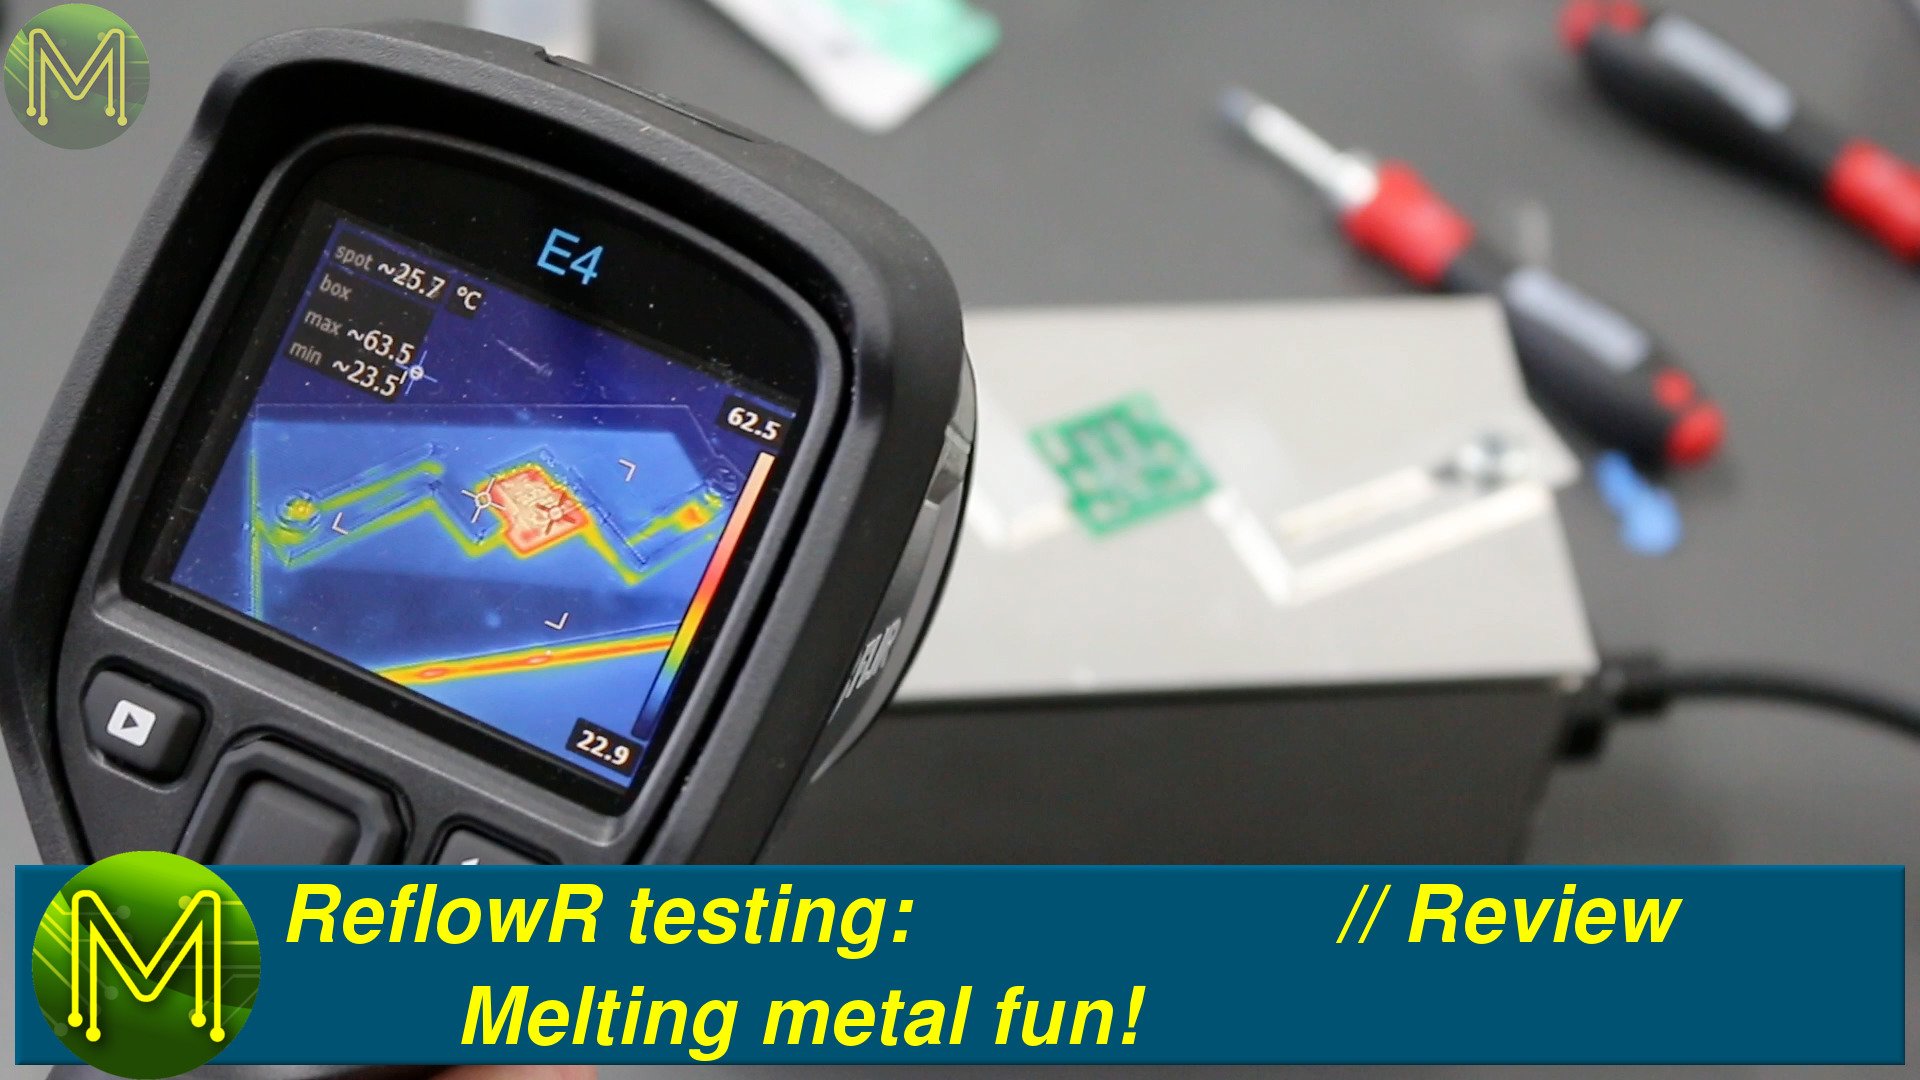 ReflowR testing: Melting metal fun! // Review